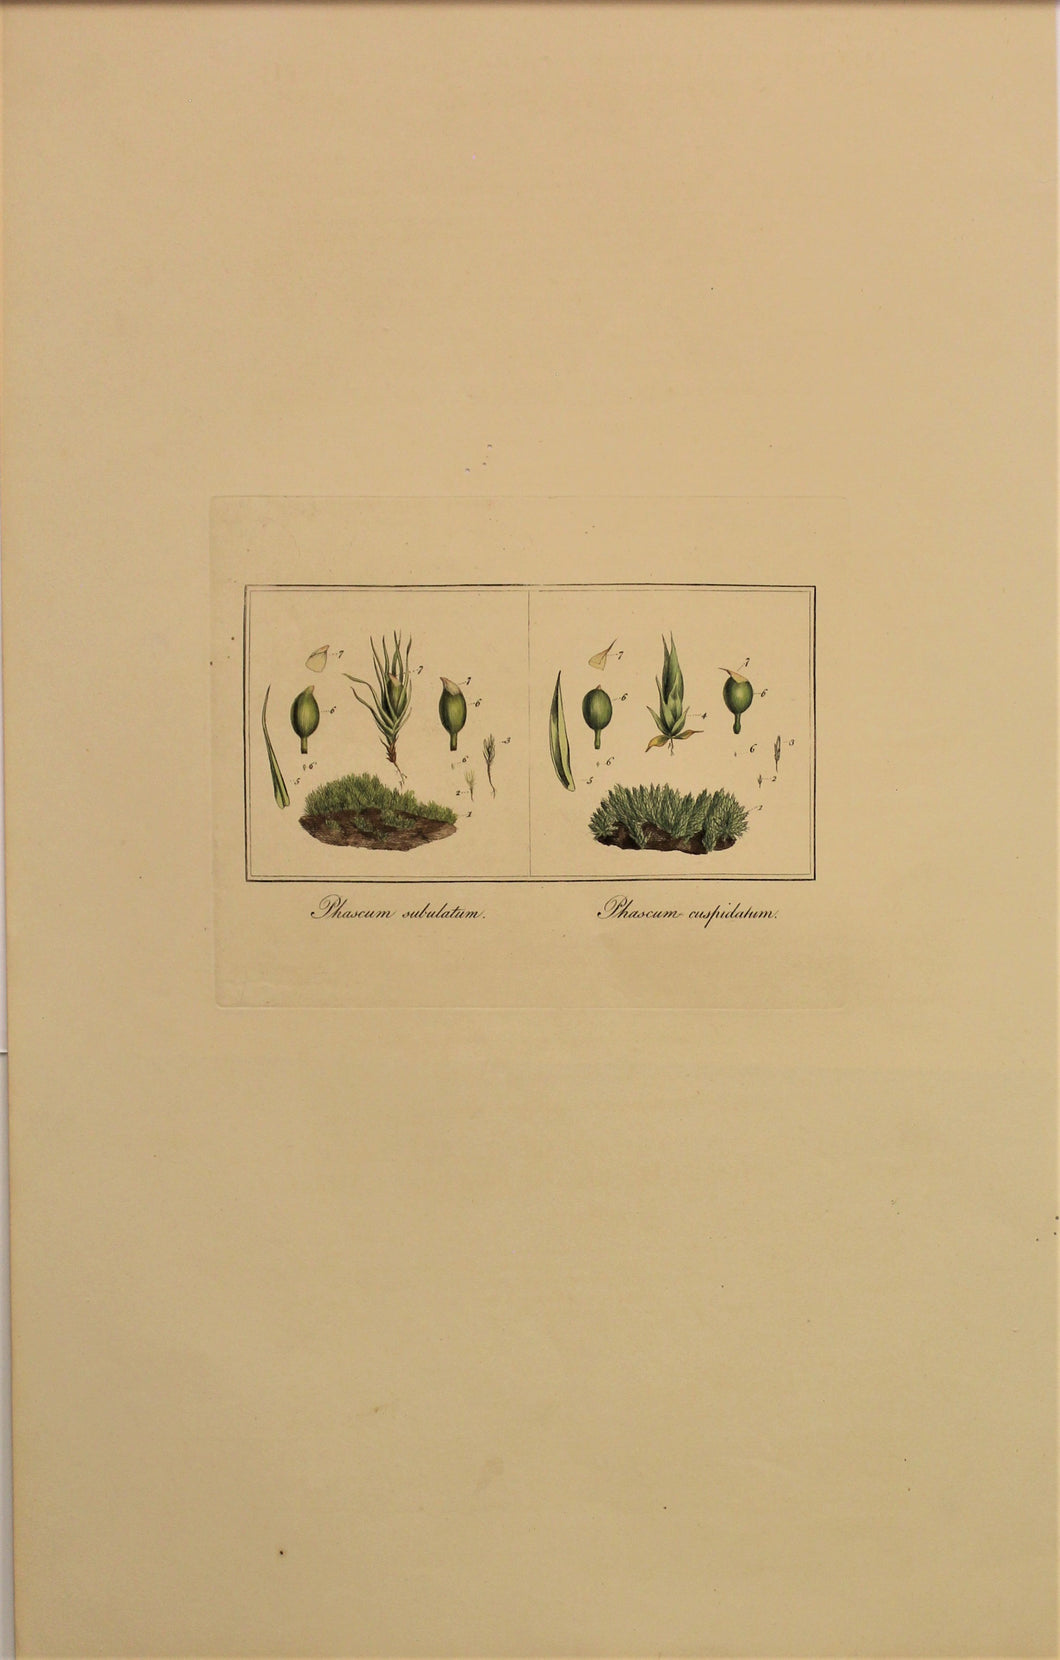 Botanical, Curtis William, Moss, Phascum Subulatum and Phascum Cuspidatum, Flora Londinensis, c1817